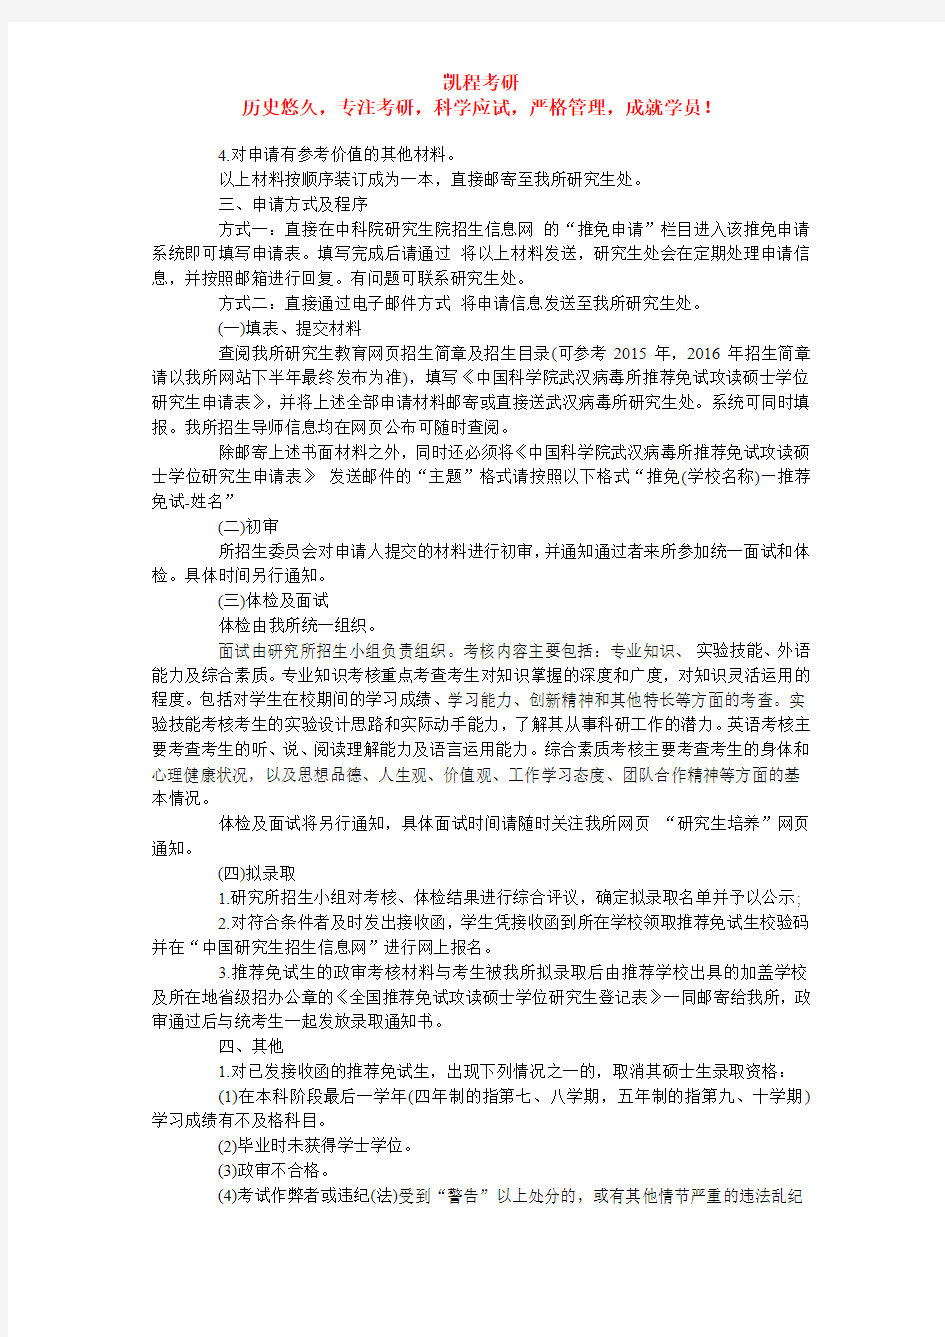 中国科学院计算技术研究所接收推免生的工作程序及要求